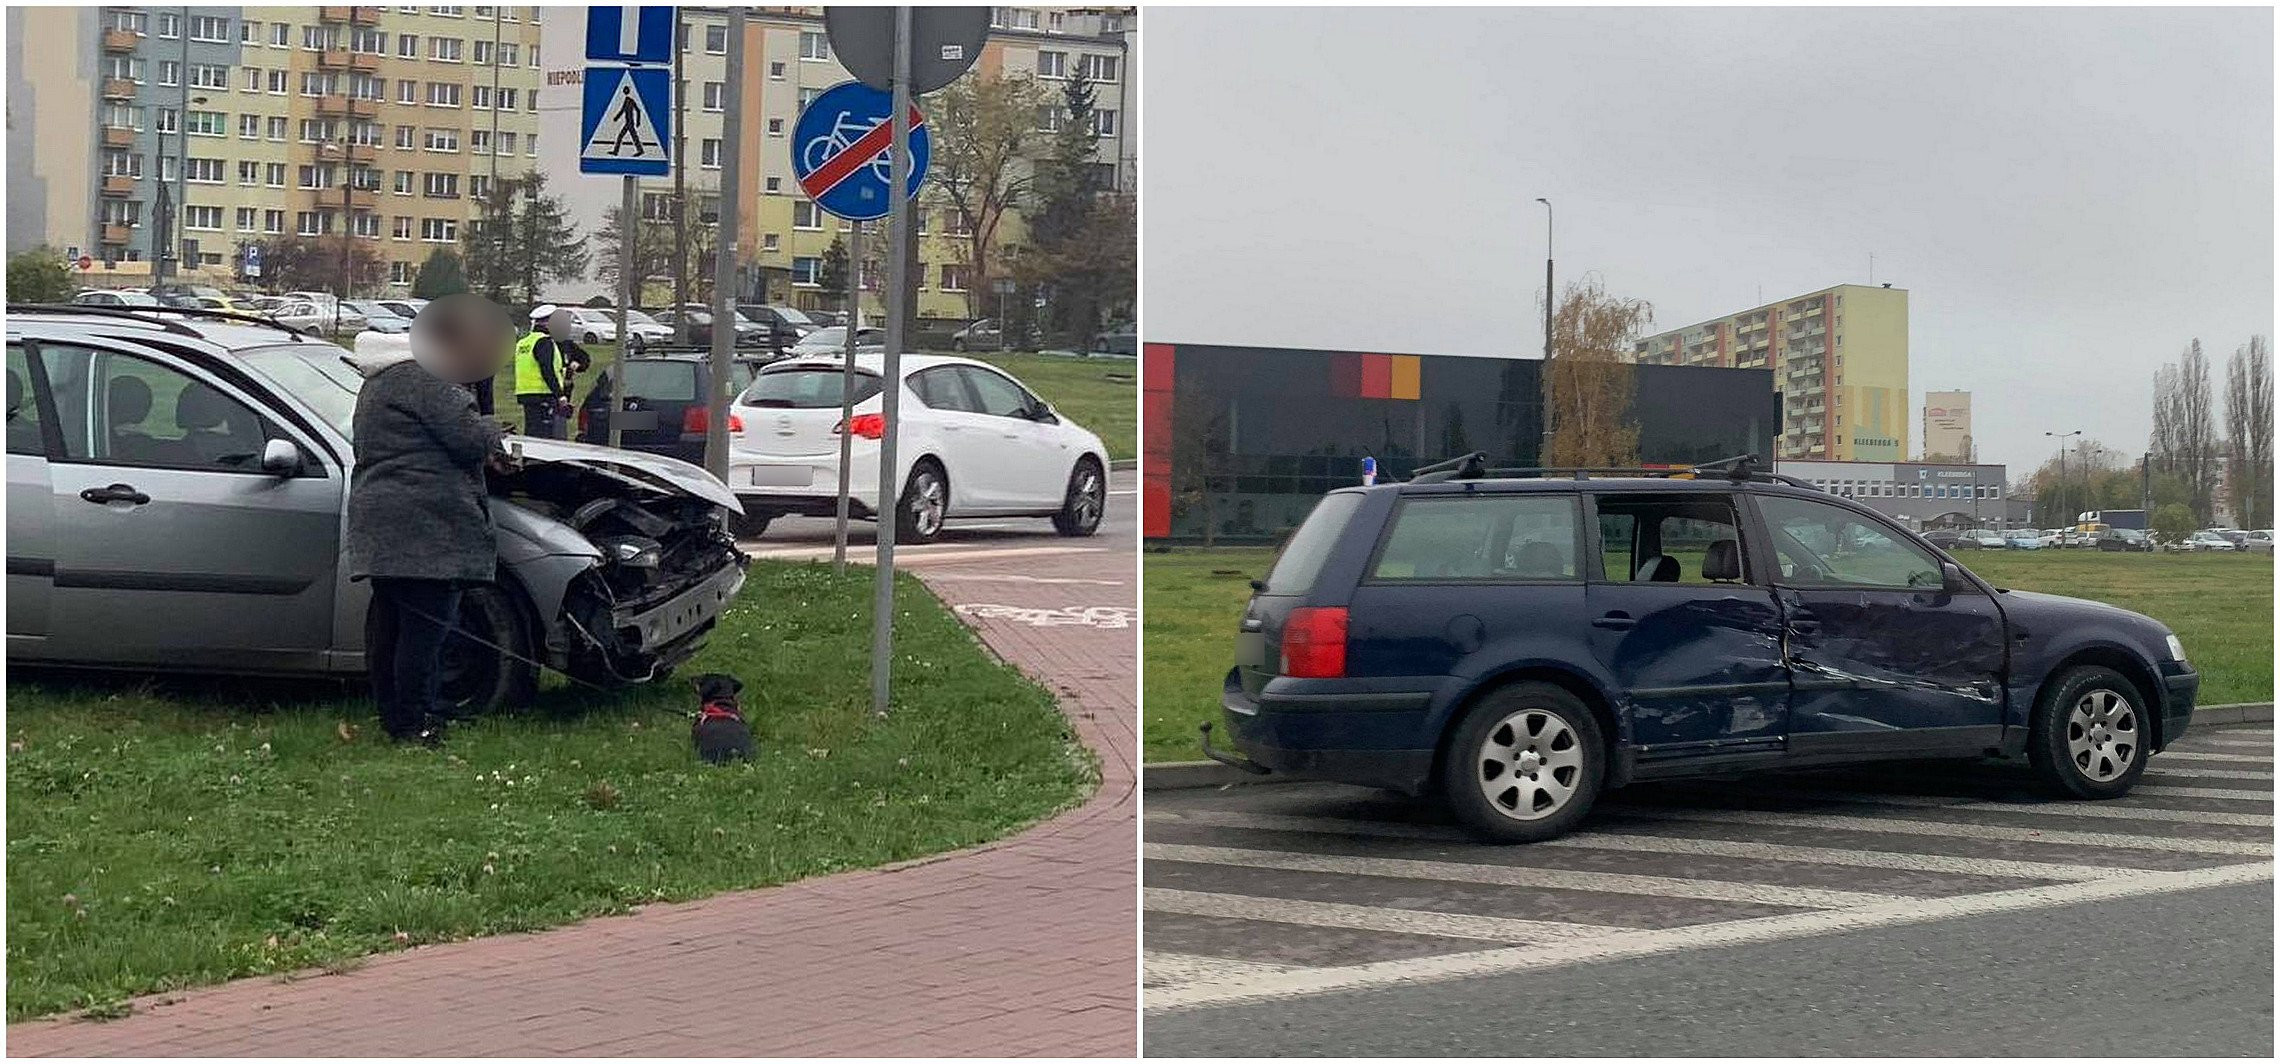 Inowrocław - Zderzenie dwóch aut przy rąbińskim pawilonie